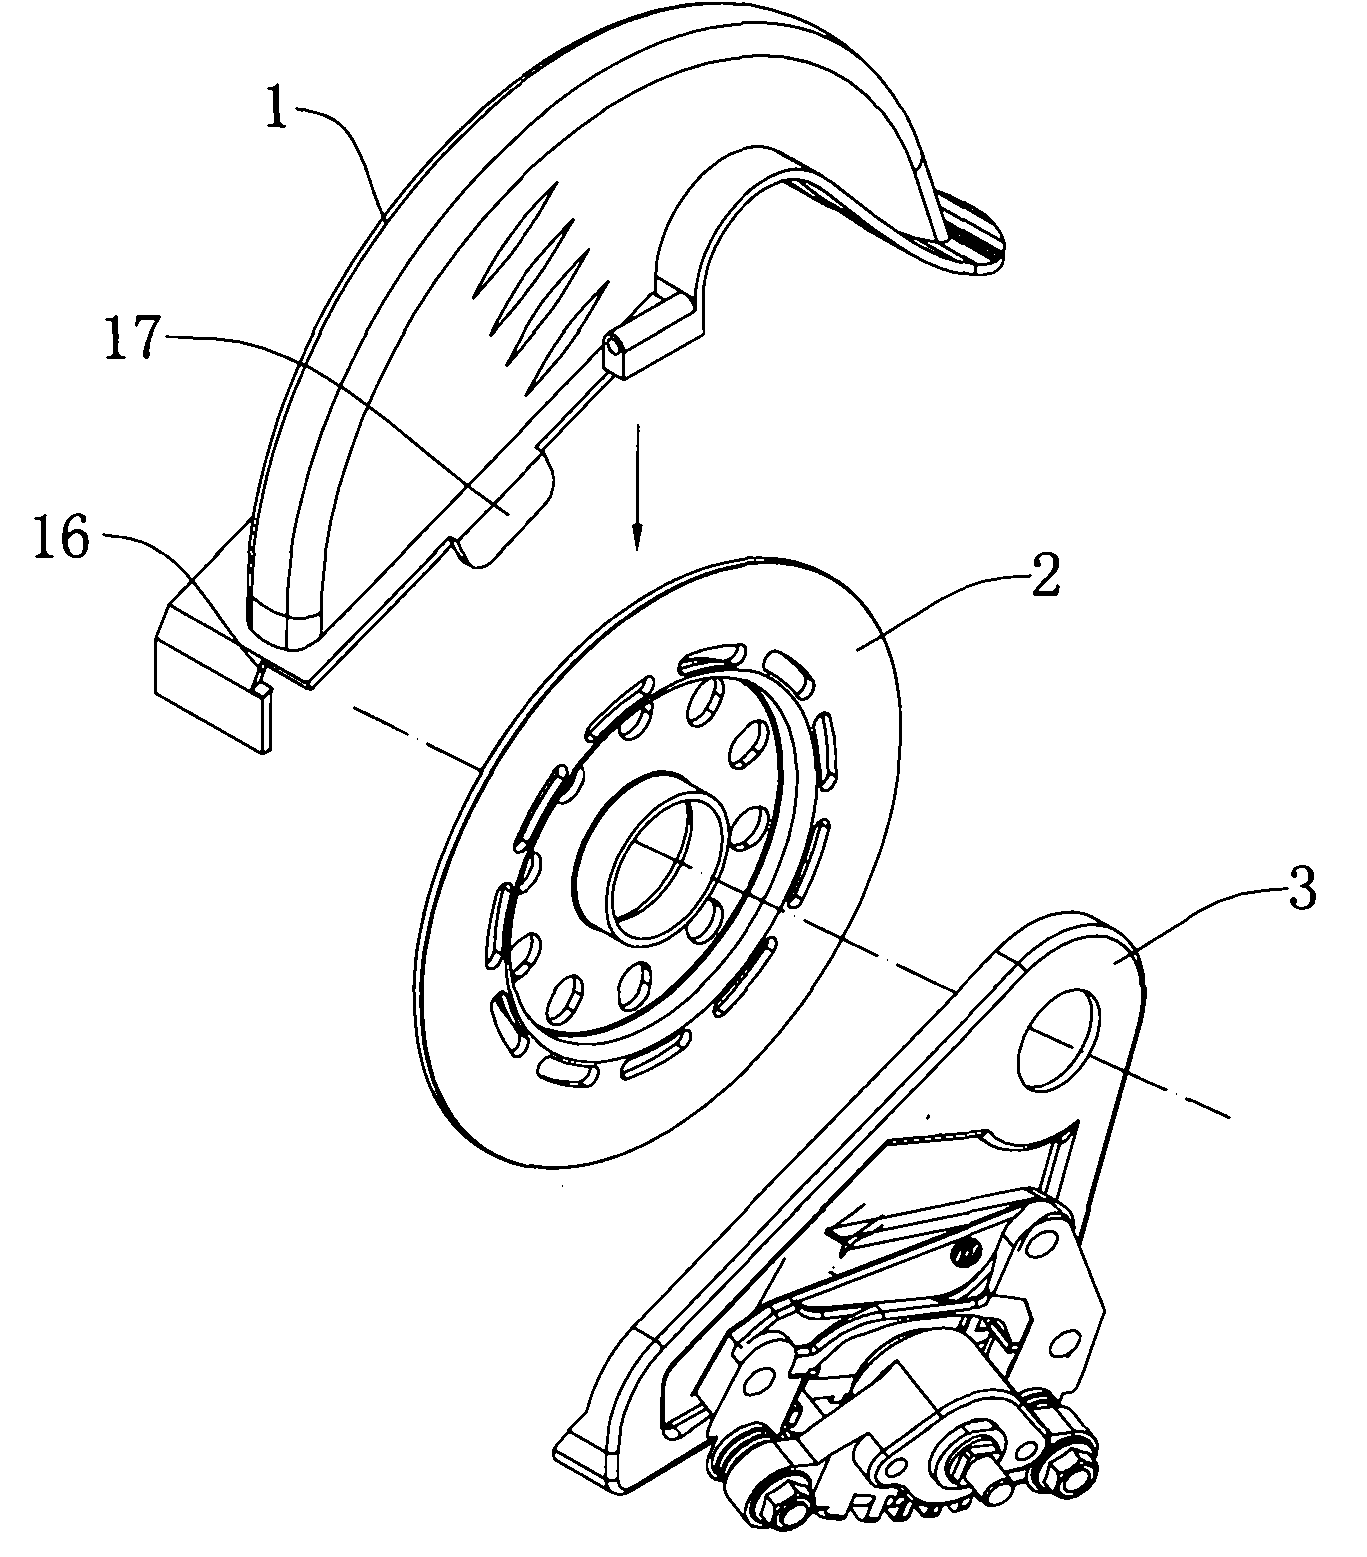 Disk brake shield